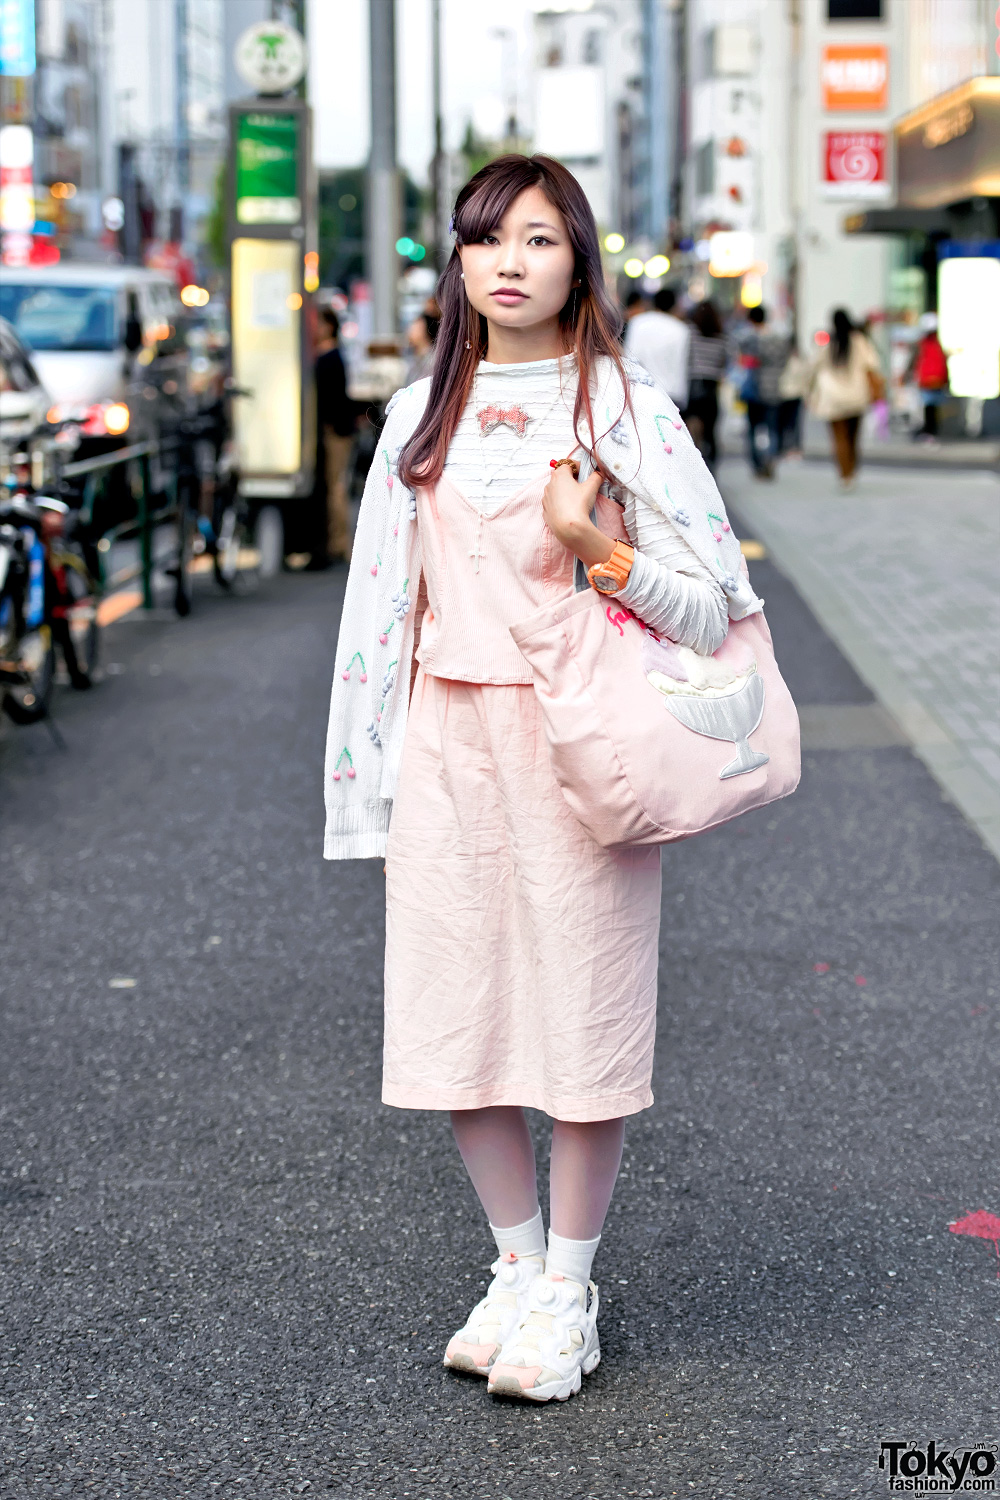 Harajuku Girl in Cute Pink Fashion w/ Ice Cream Bag & Reebok Pump Sneakers